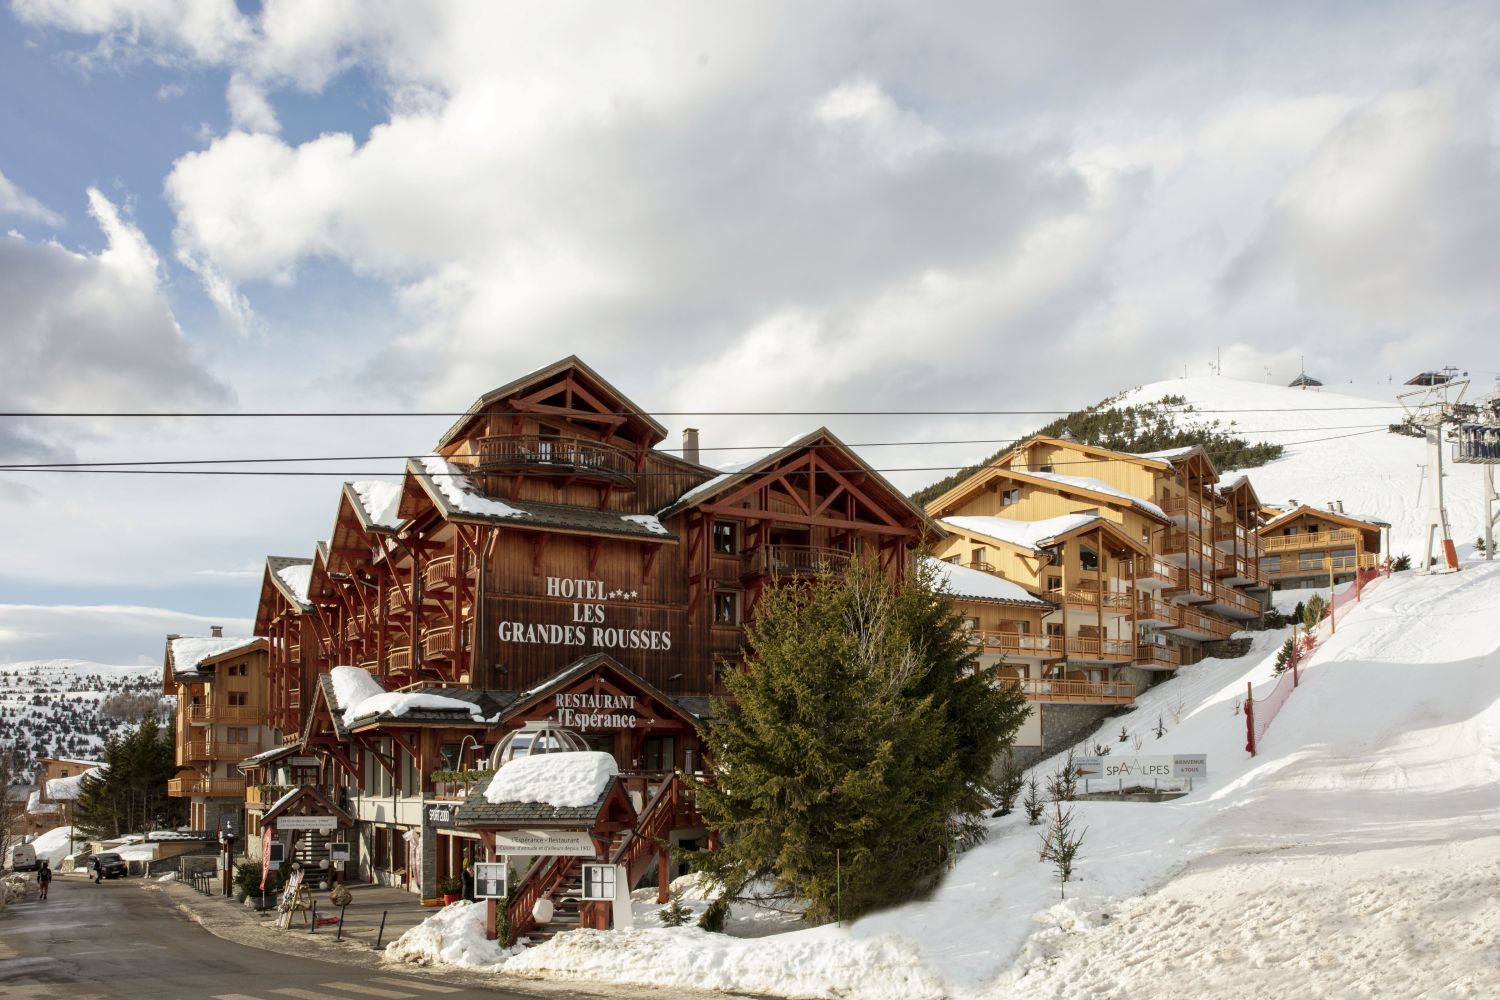 Découvrez pour vos évènements professionnels en Isère, Hôtel Les Grandes Rousses au cœur de la station de ski de l'Alpes d'Huez.